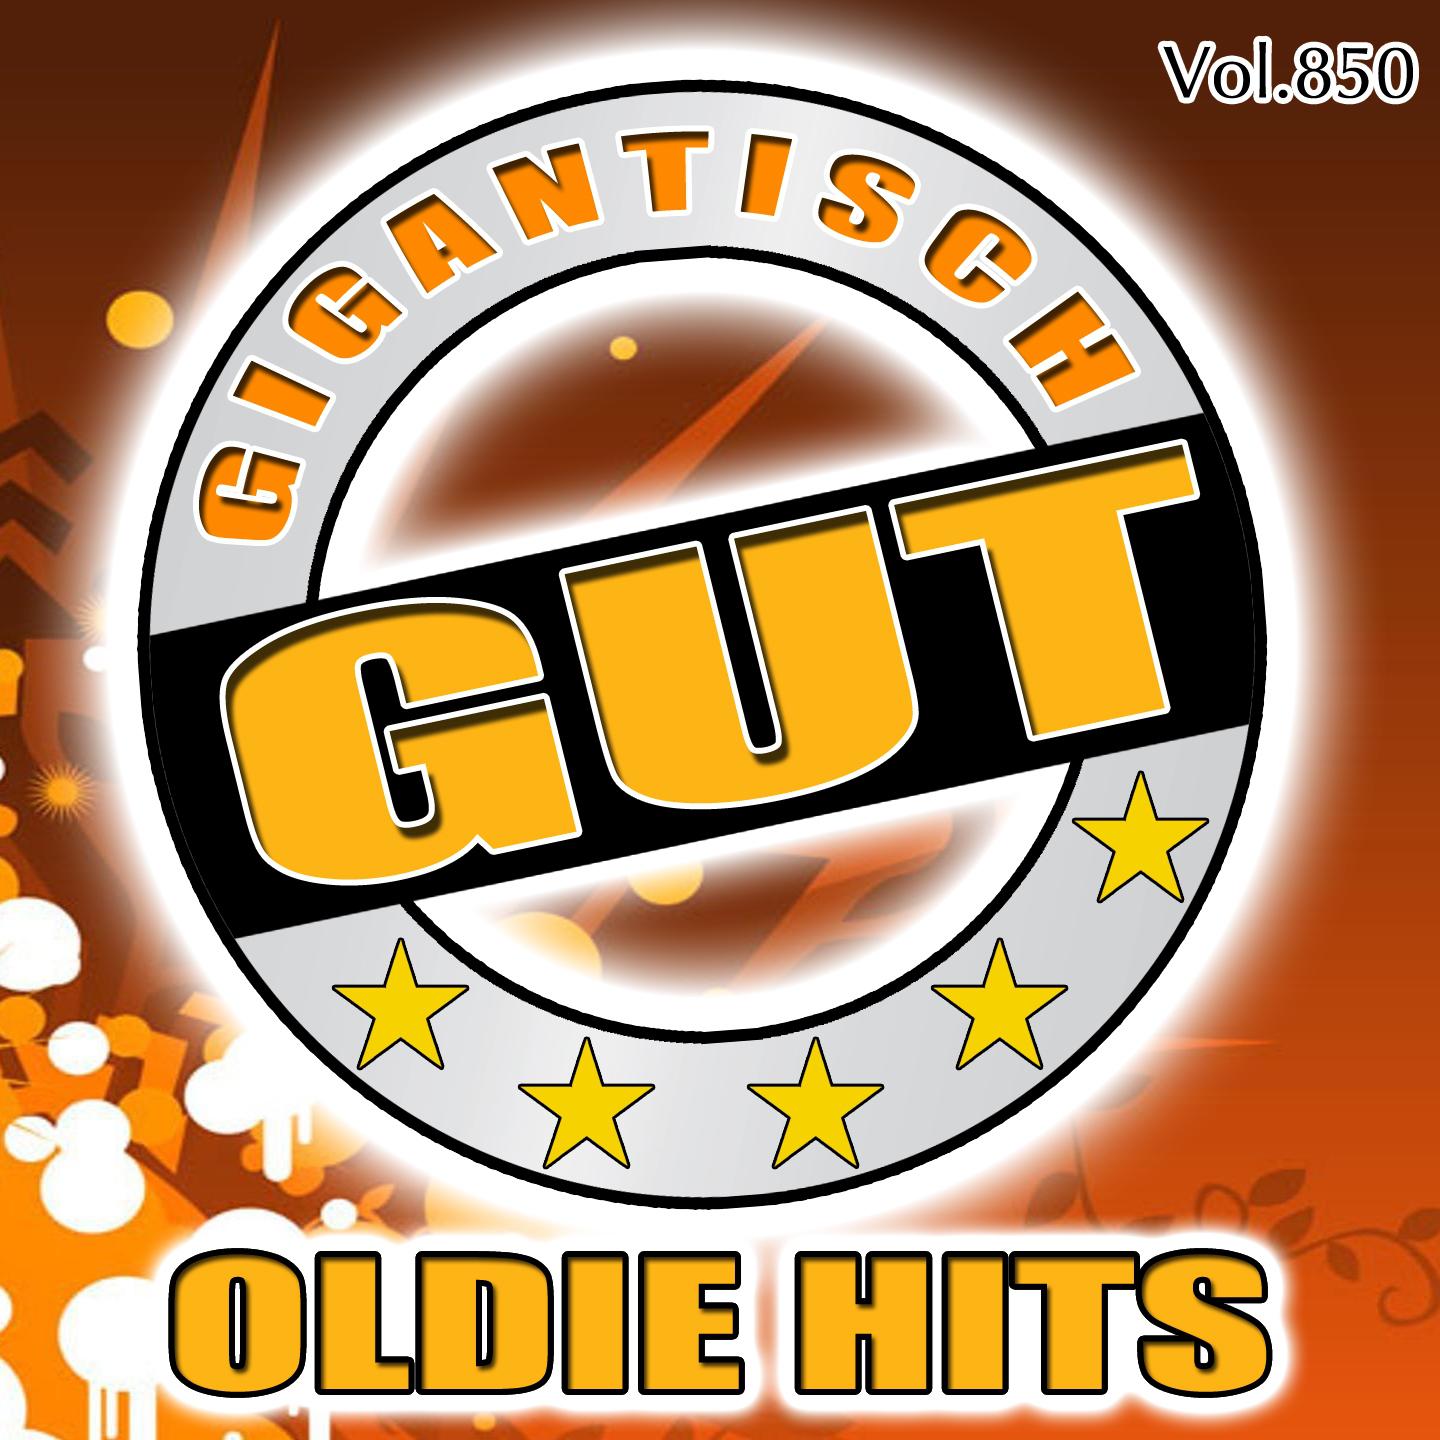 Gigantisch Gut: Oldie Hits, Vol. 850